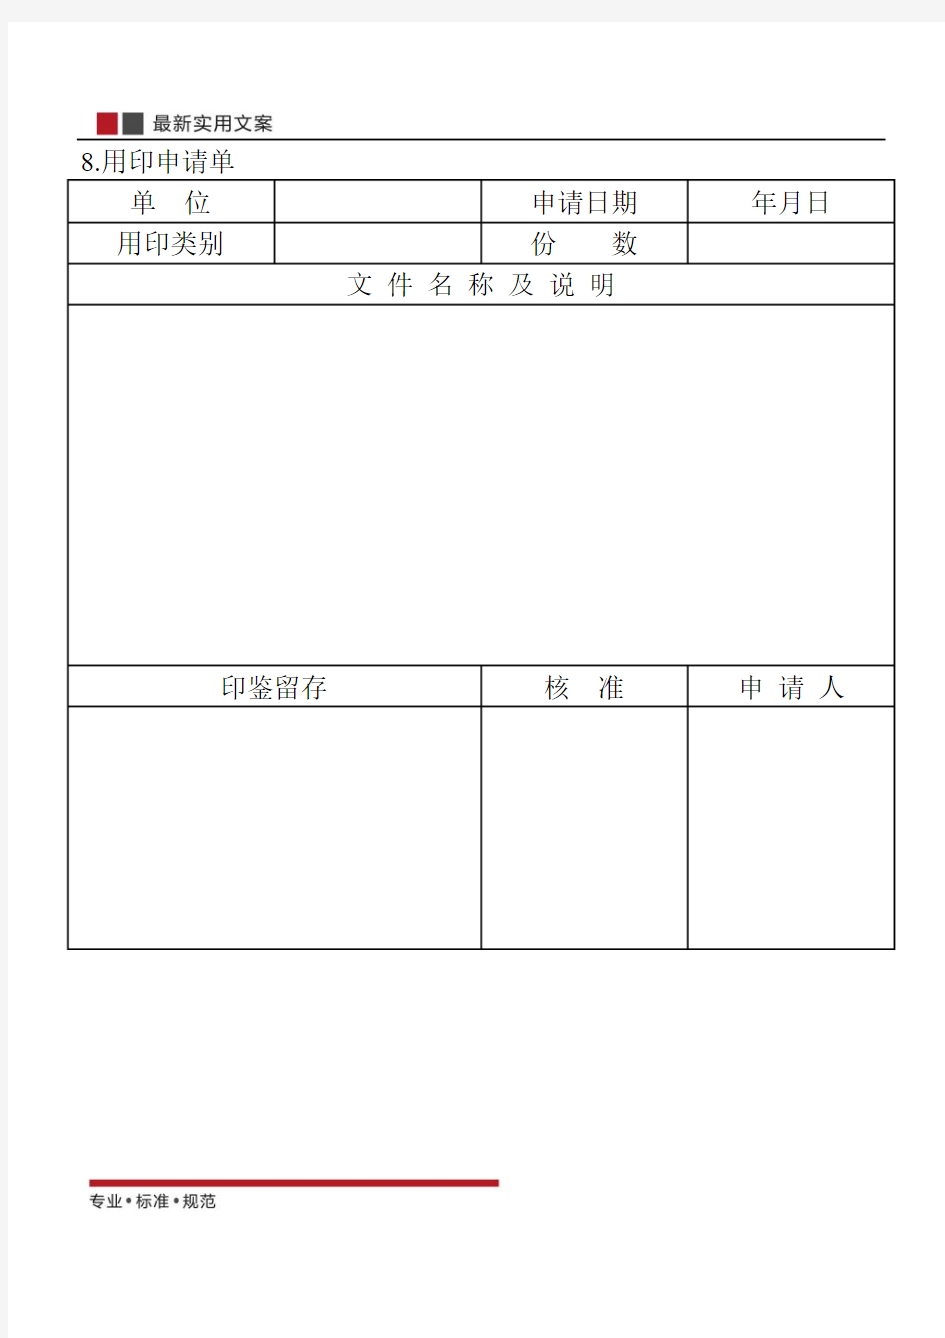 【范本】用印申请单(标准模板)